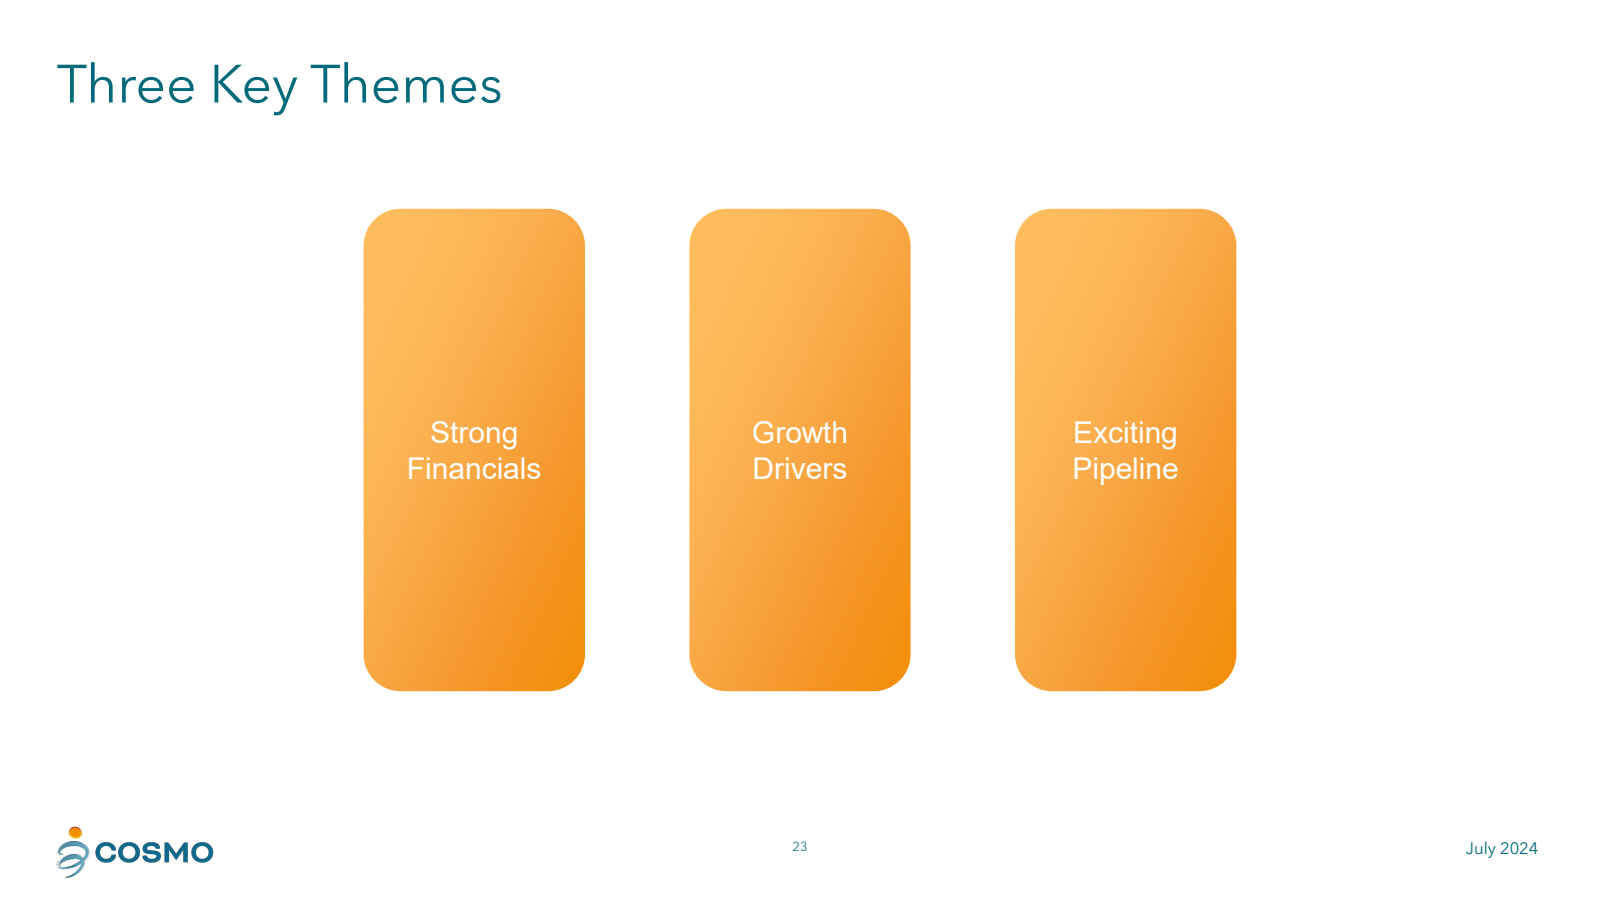 Three Key Themes 

S